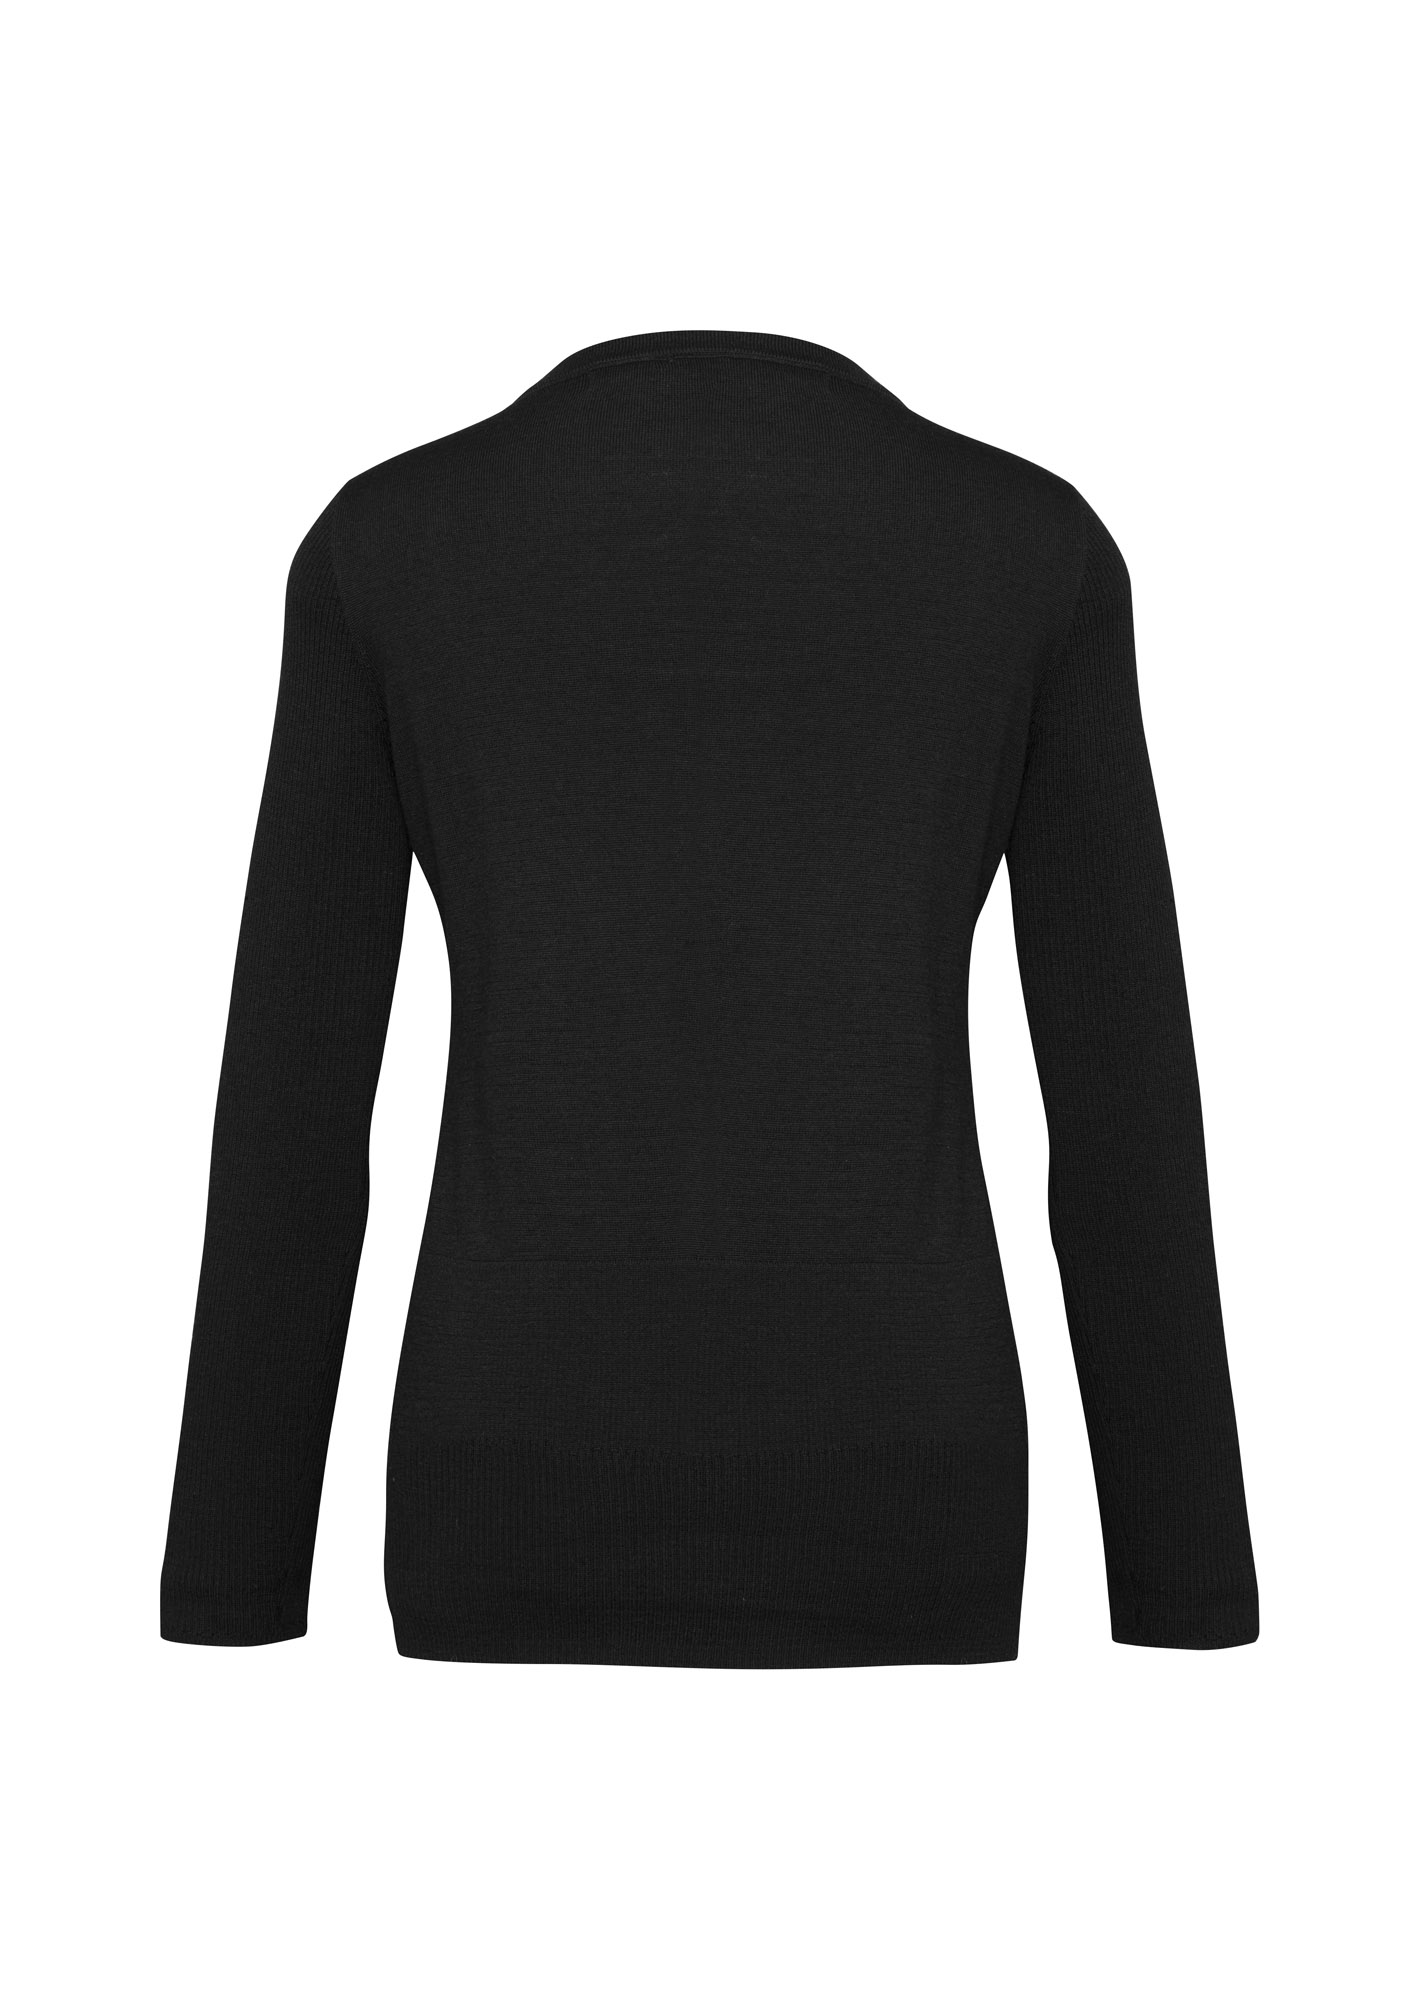 Ladies Milano Cardigan Black - Uniform Edit